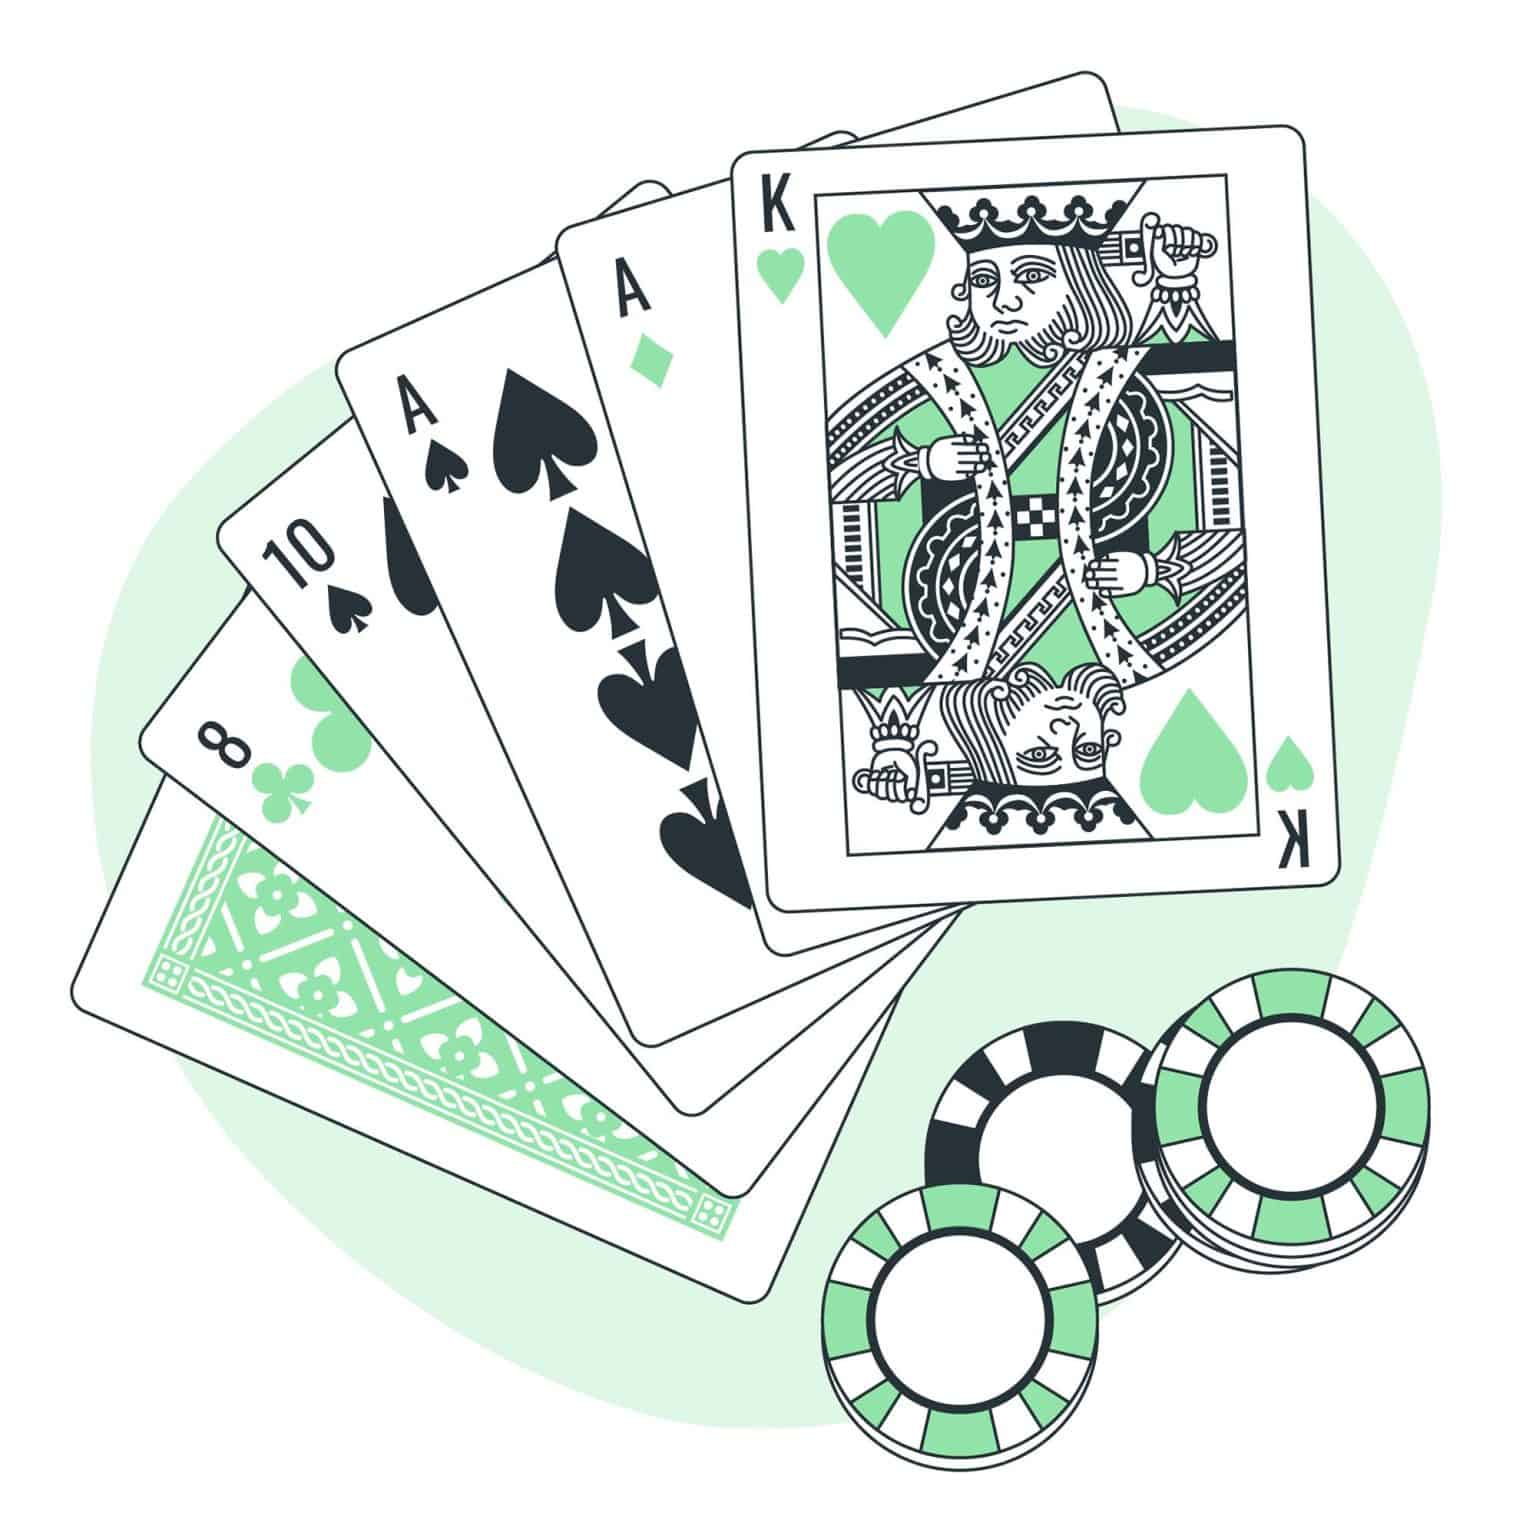 Blackjack Regeln: So spielen Sie richtig und gewinnen mehr